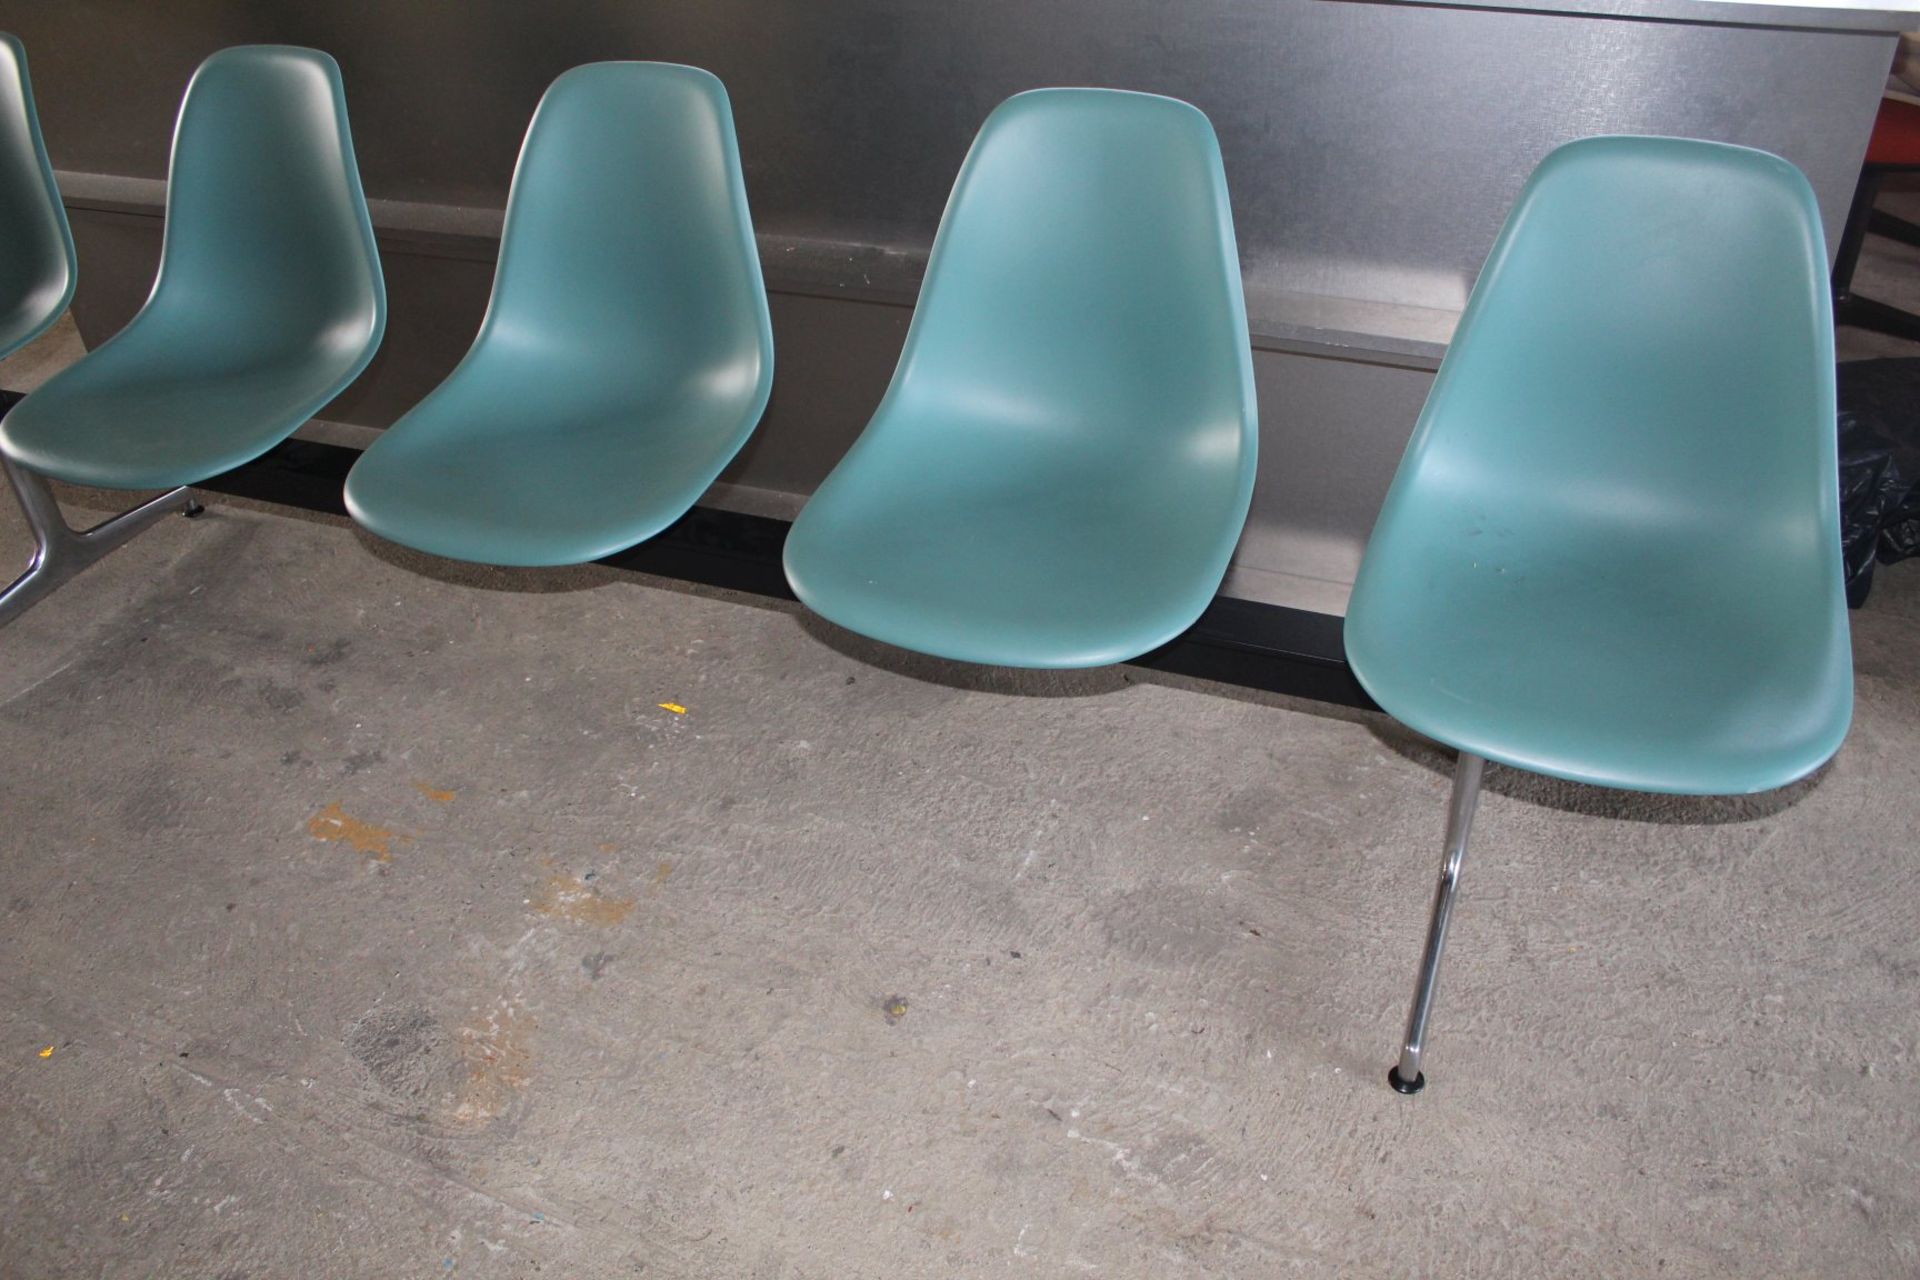 Eames, Charles-Fünfer-Sitzbank 'Tandem Seating', 1963 H. 83 x 280 x 565 cm. Vitra Design, Weil am - Image 3 of 6